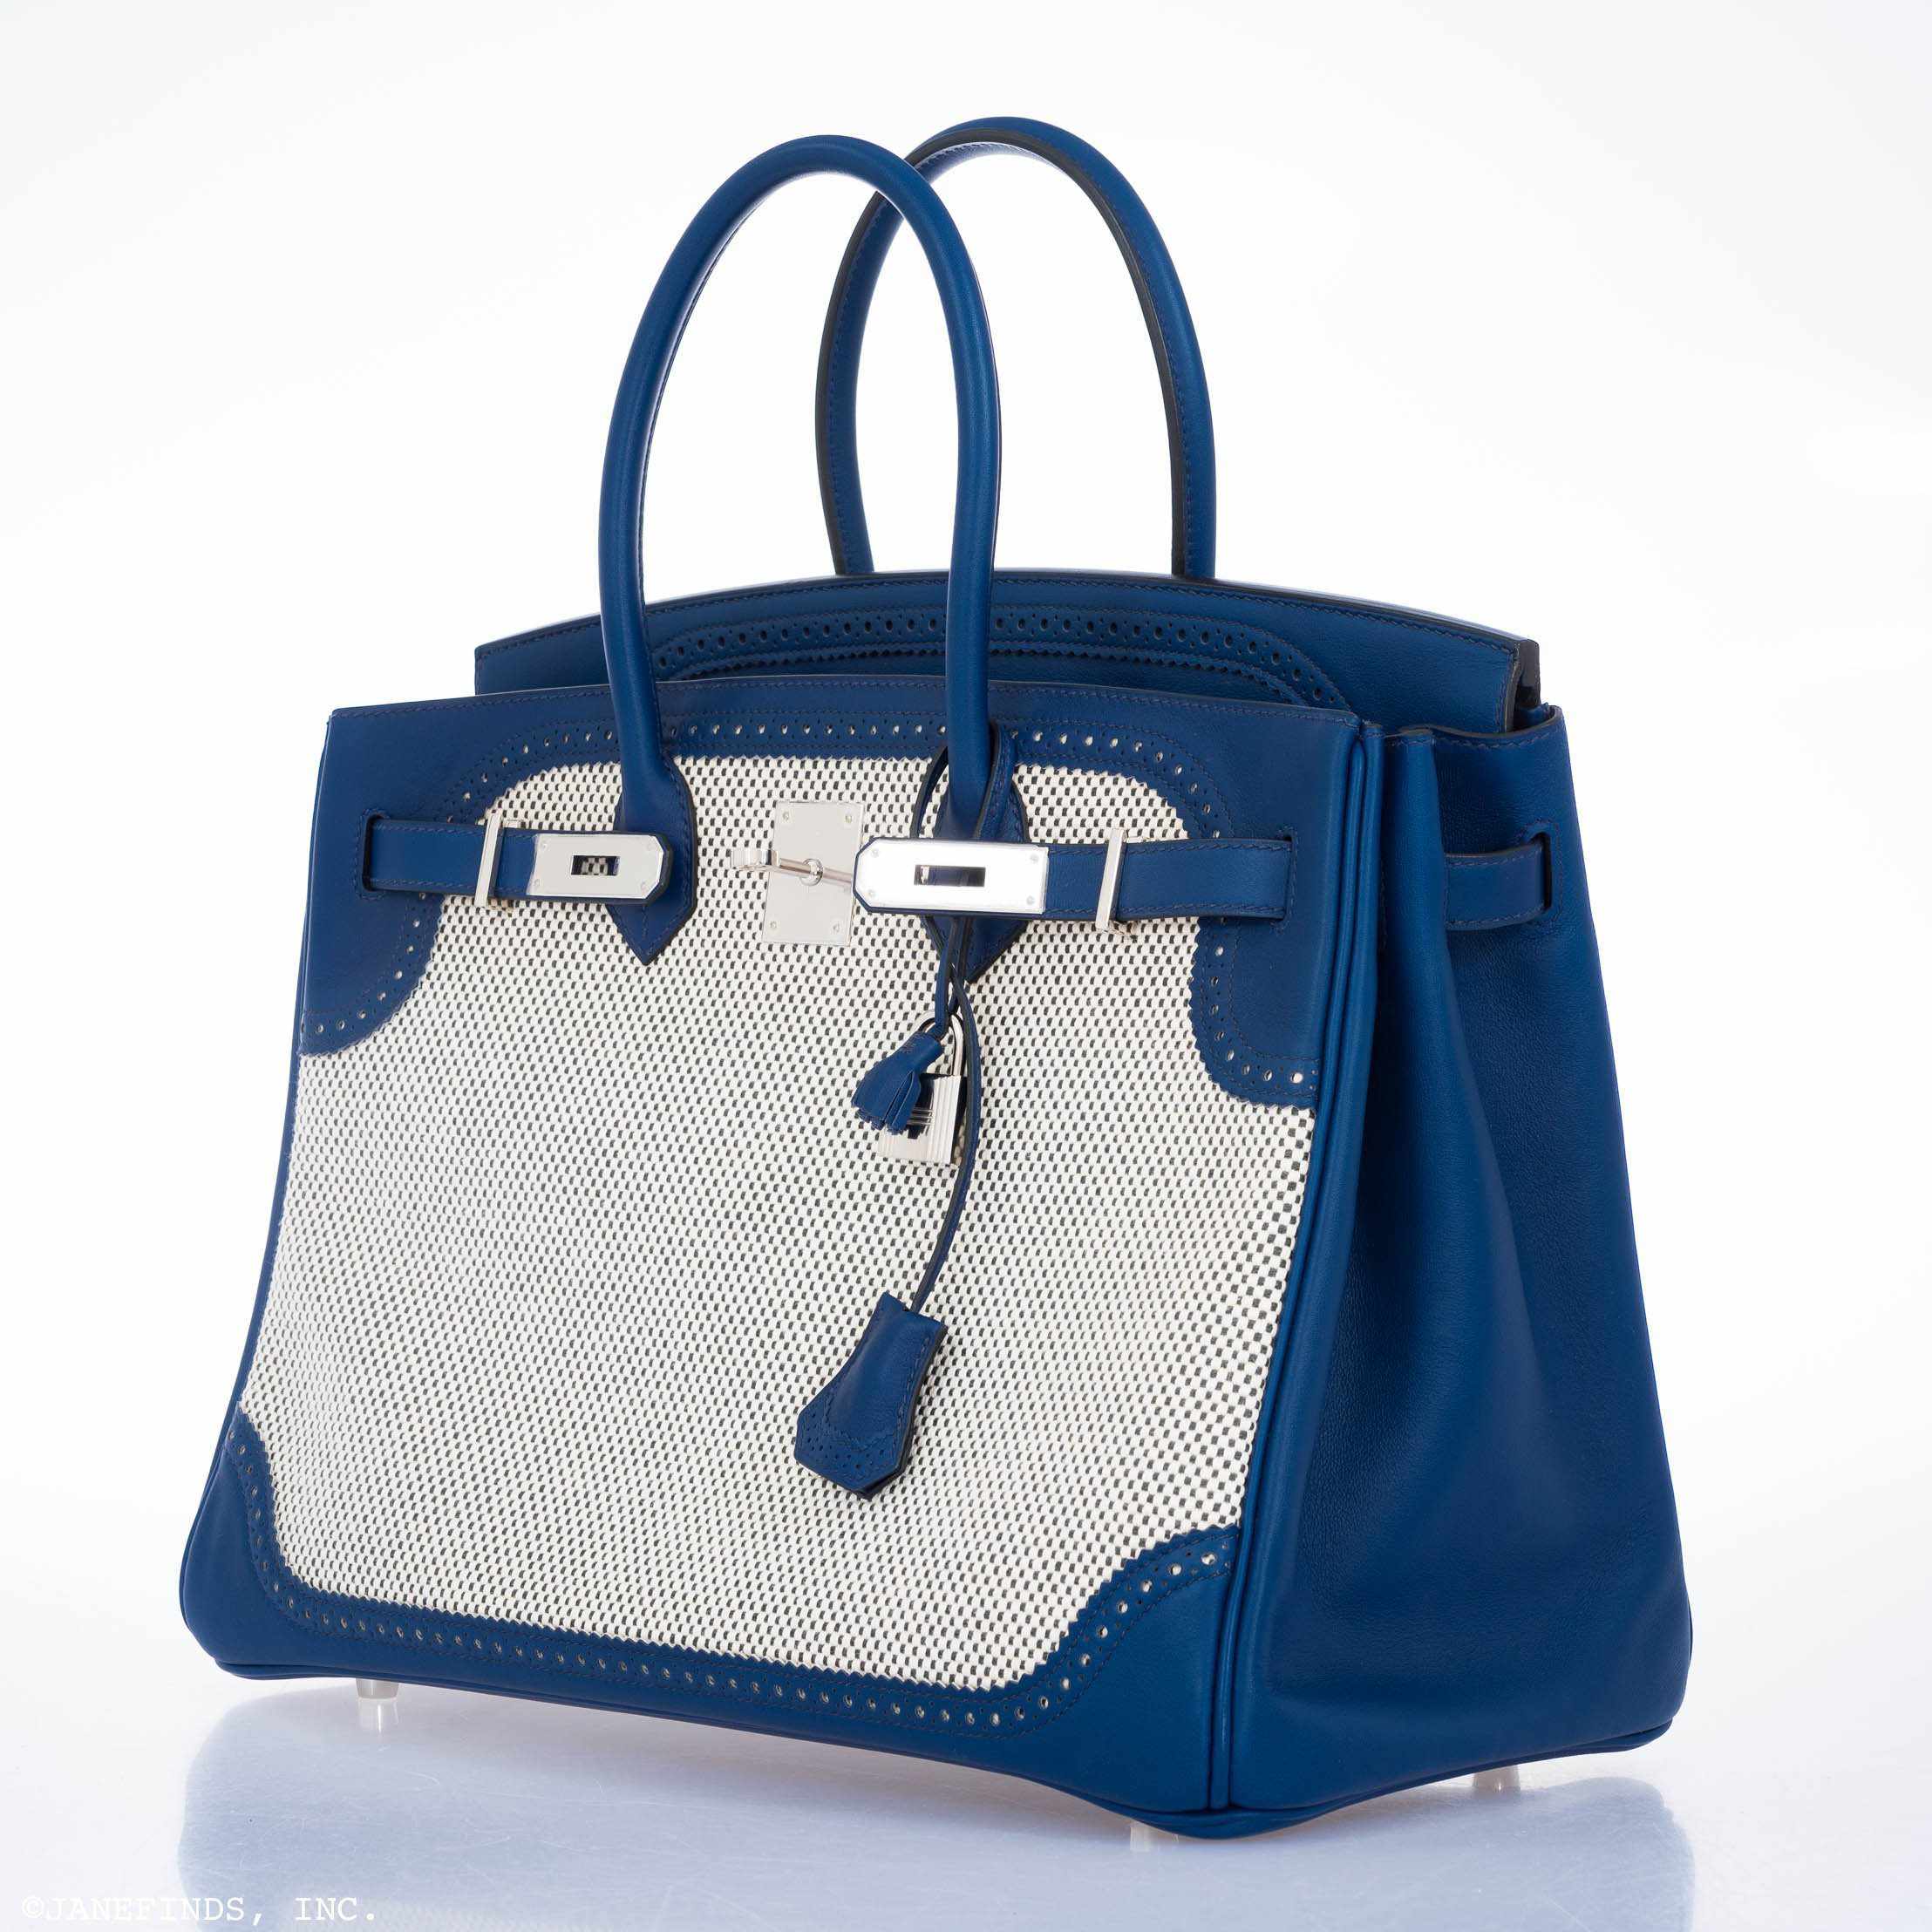 Hermès Birkin 35 Ghillies Bleu Saphir Swift And Toile Palladium Hardware